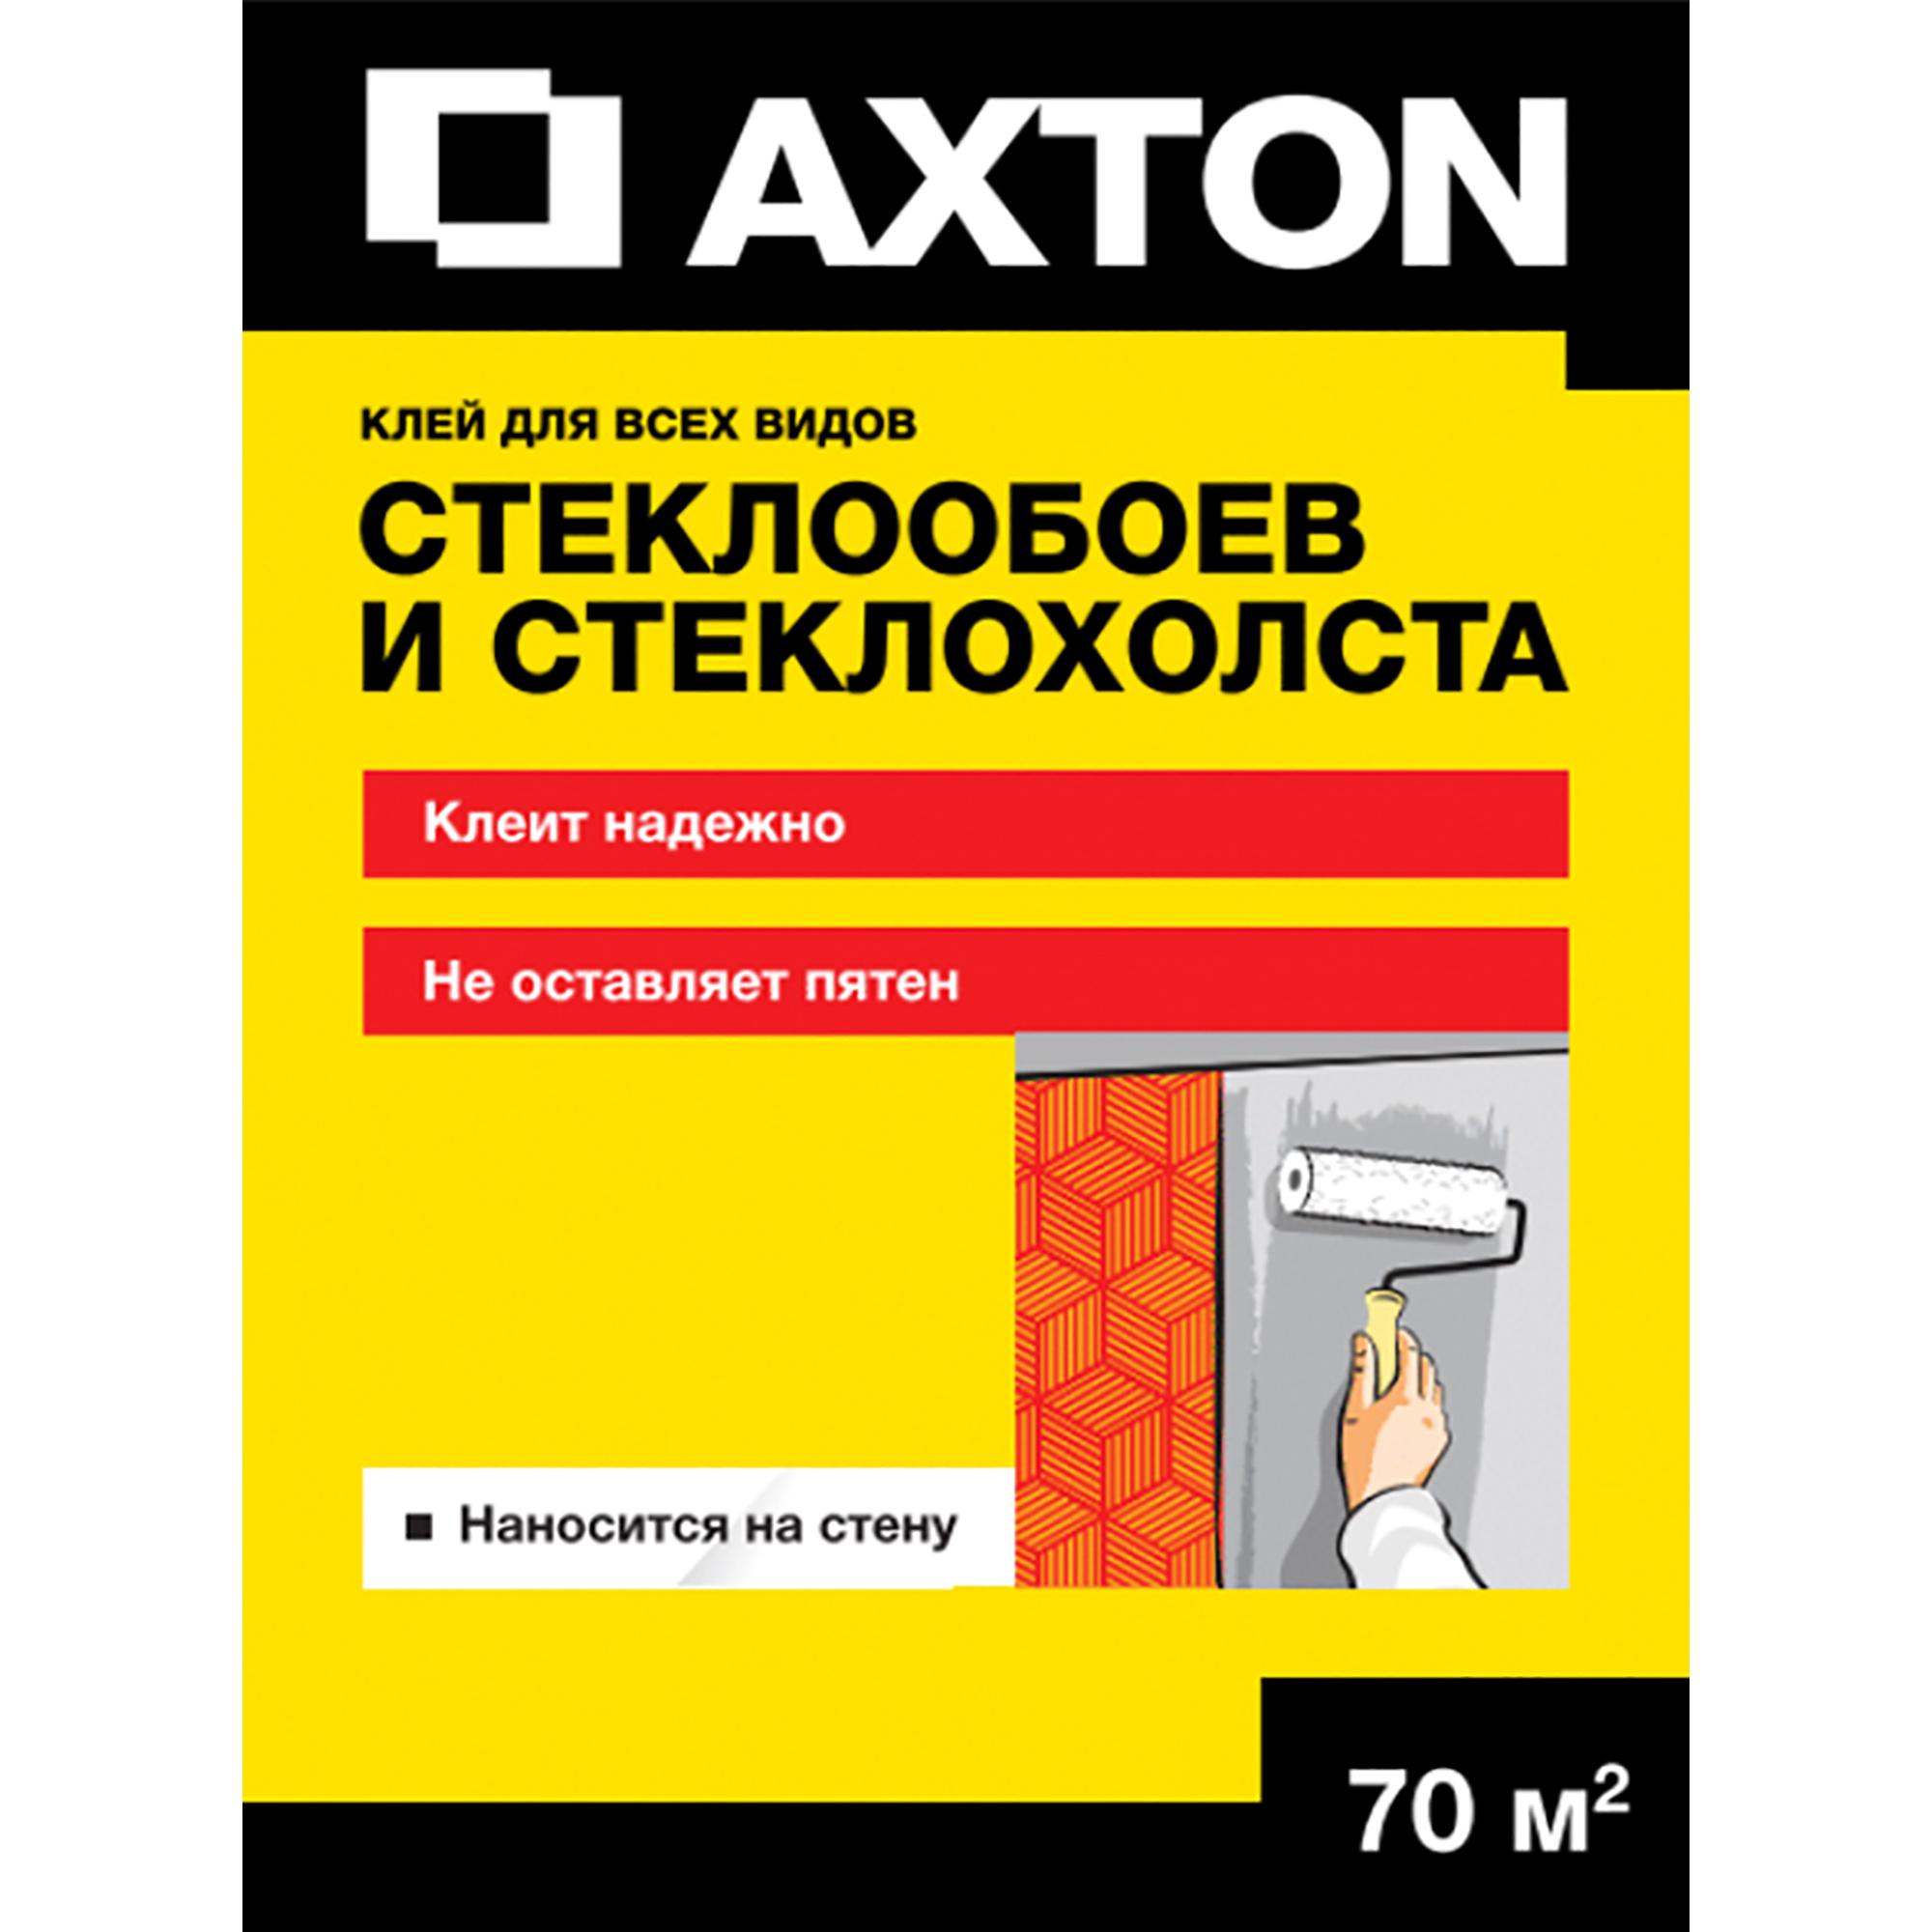 Клей для обоев axton. Клей для стеклообоев Axton 70 м². Клей Акстон для обоев. Клей ахтон для обоев. Axton клей для всех видов обоев.